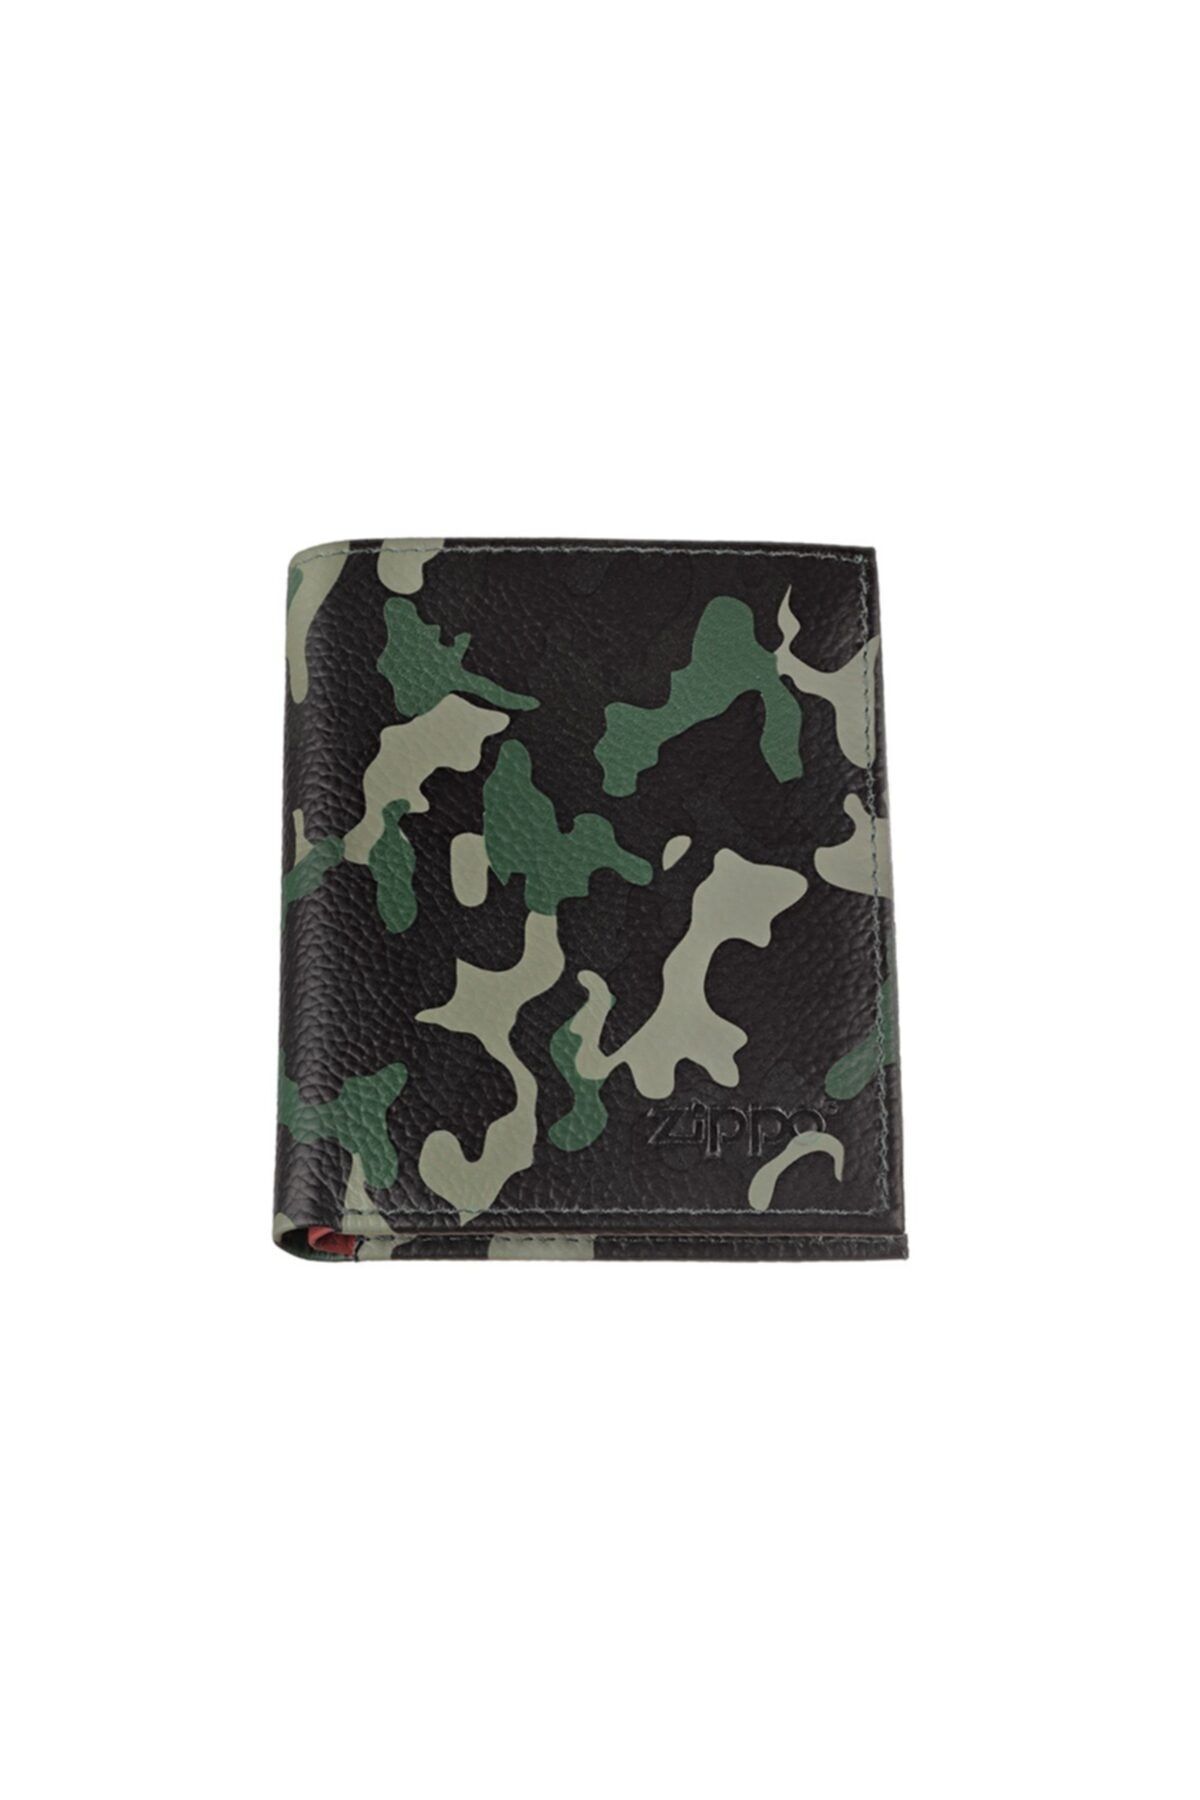 Zippo Tri-fold Wallet Camo Green 2006047